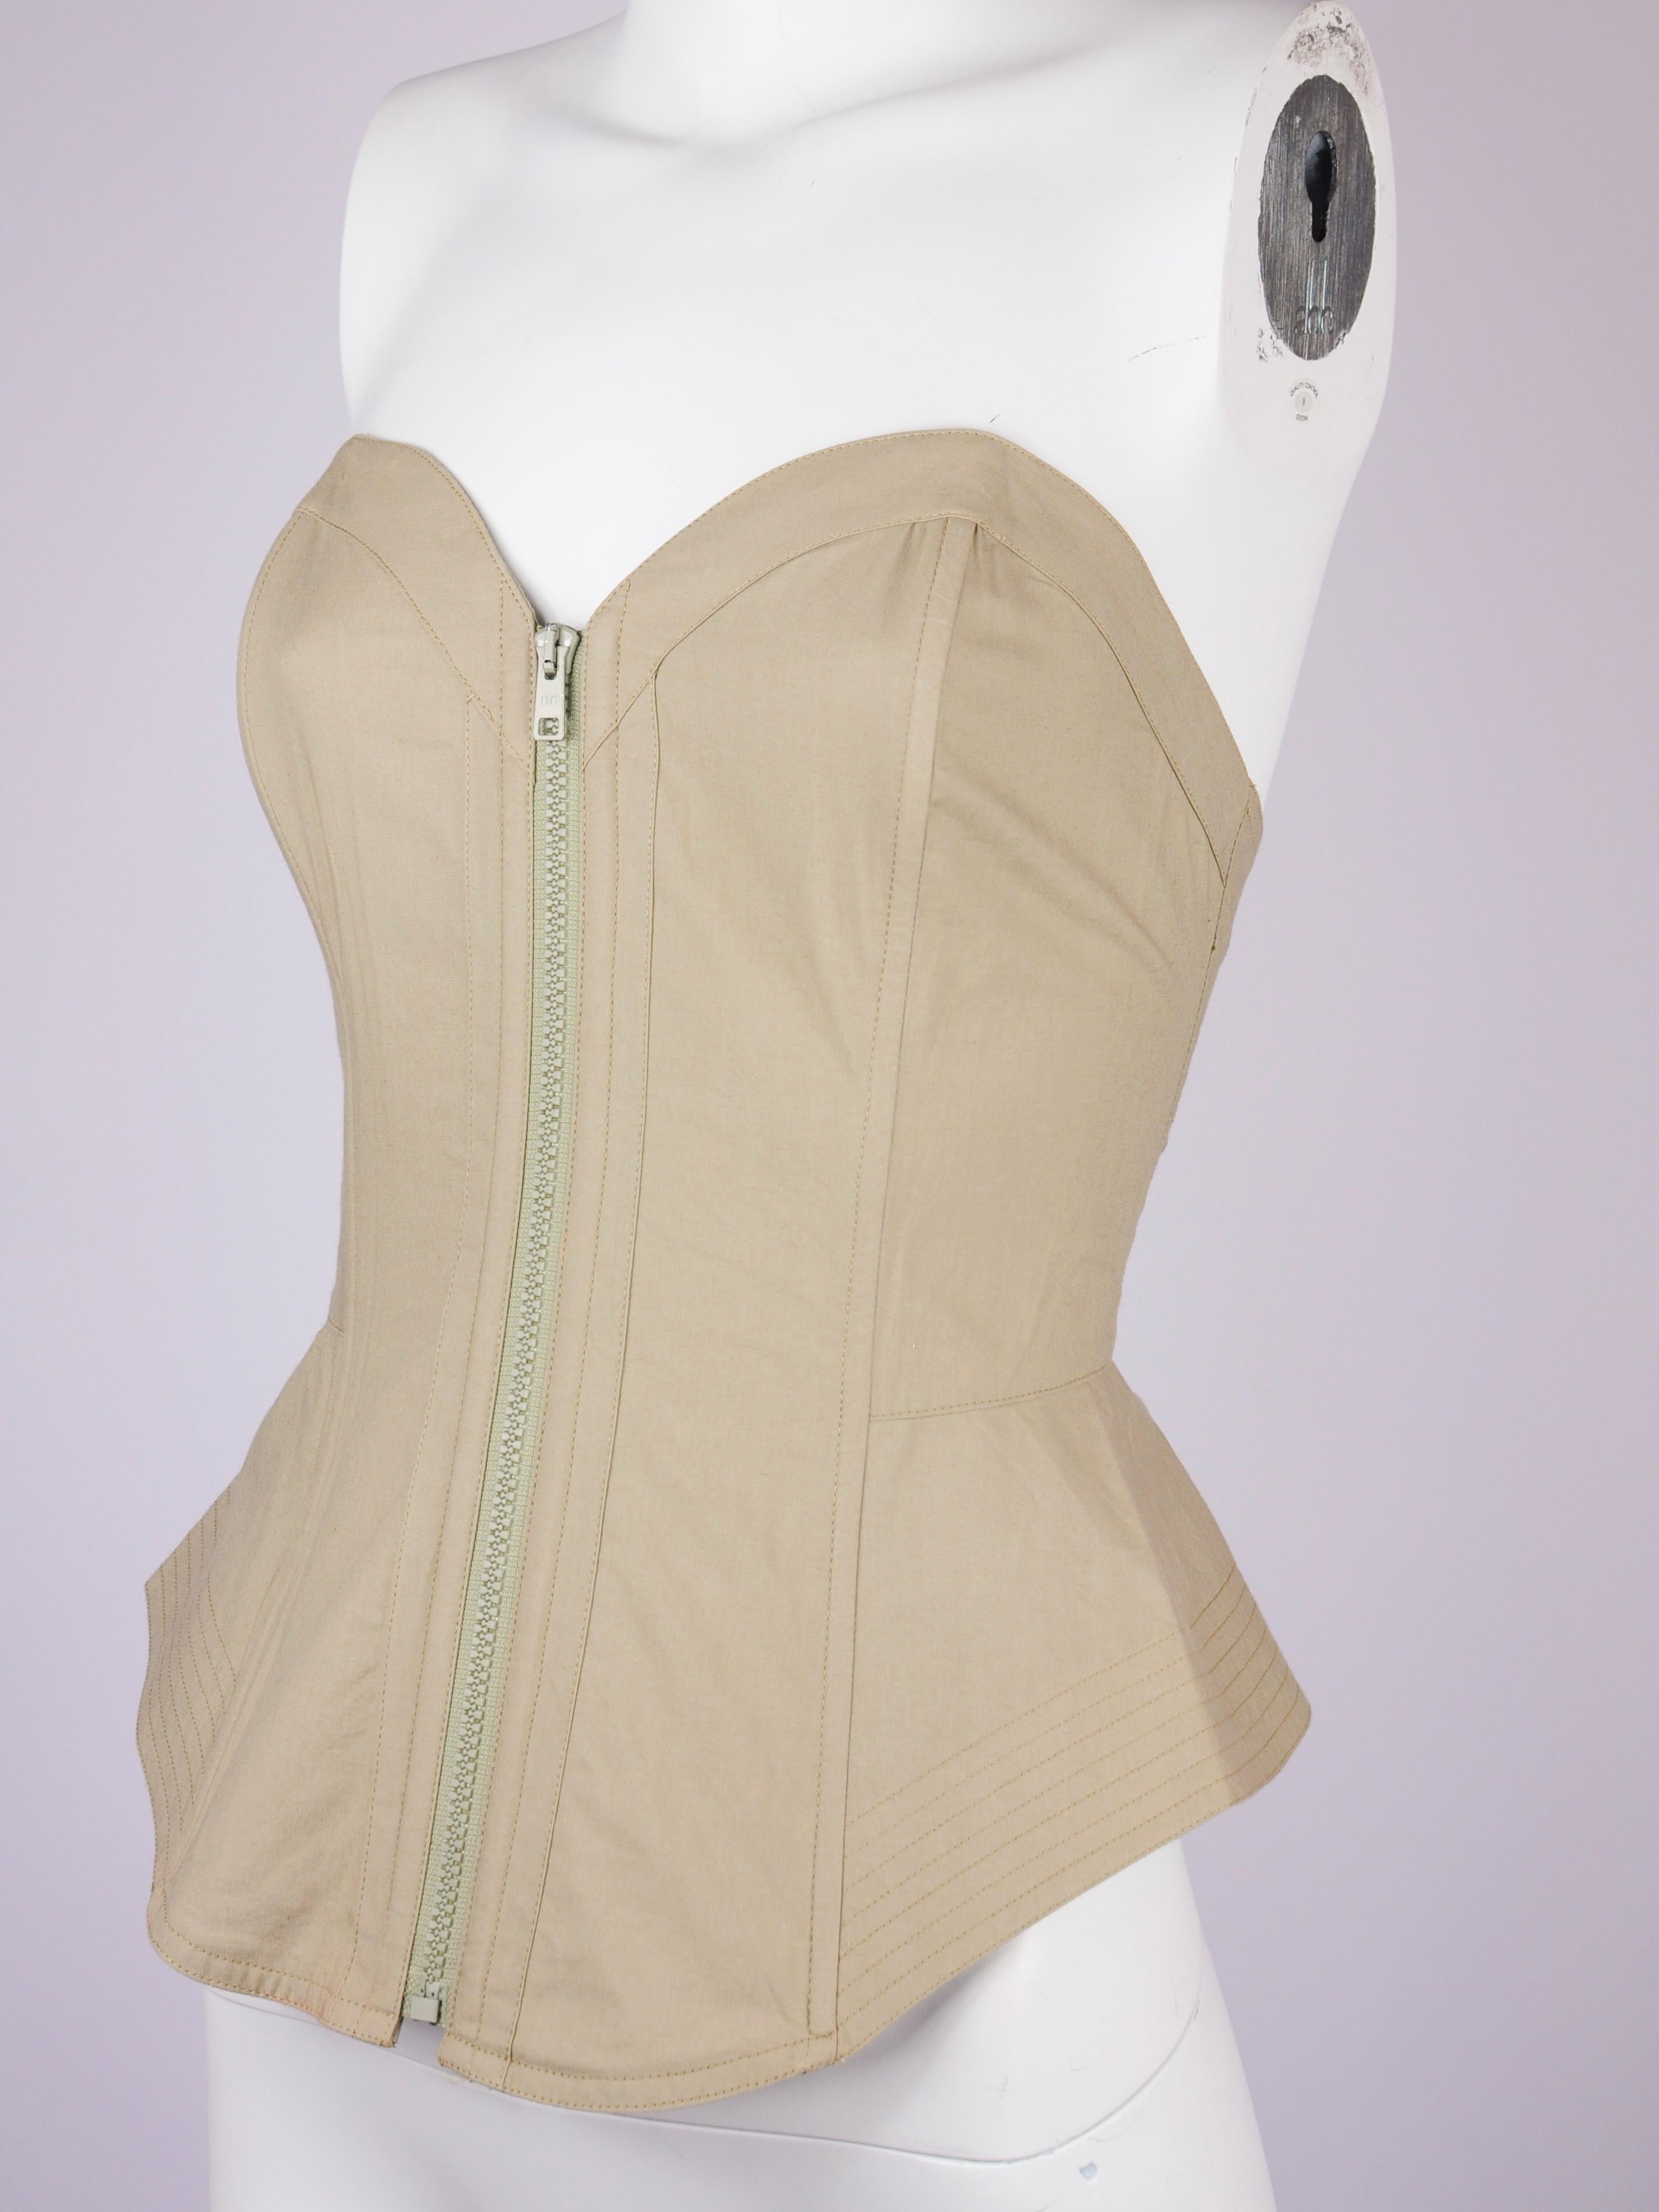 Korsett-Top von La Perla aus beiger Baumwolle aus den frühen 1990er Jahren. Dieses La Perla Korsett ist deadstock, d.h. es ist neu mit Etiketten und wurde noch nie getragen. Es ist mit Stäbchen verstärkt und hat einen elastischen Einsatz am Rücken,